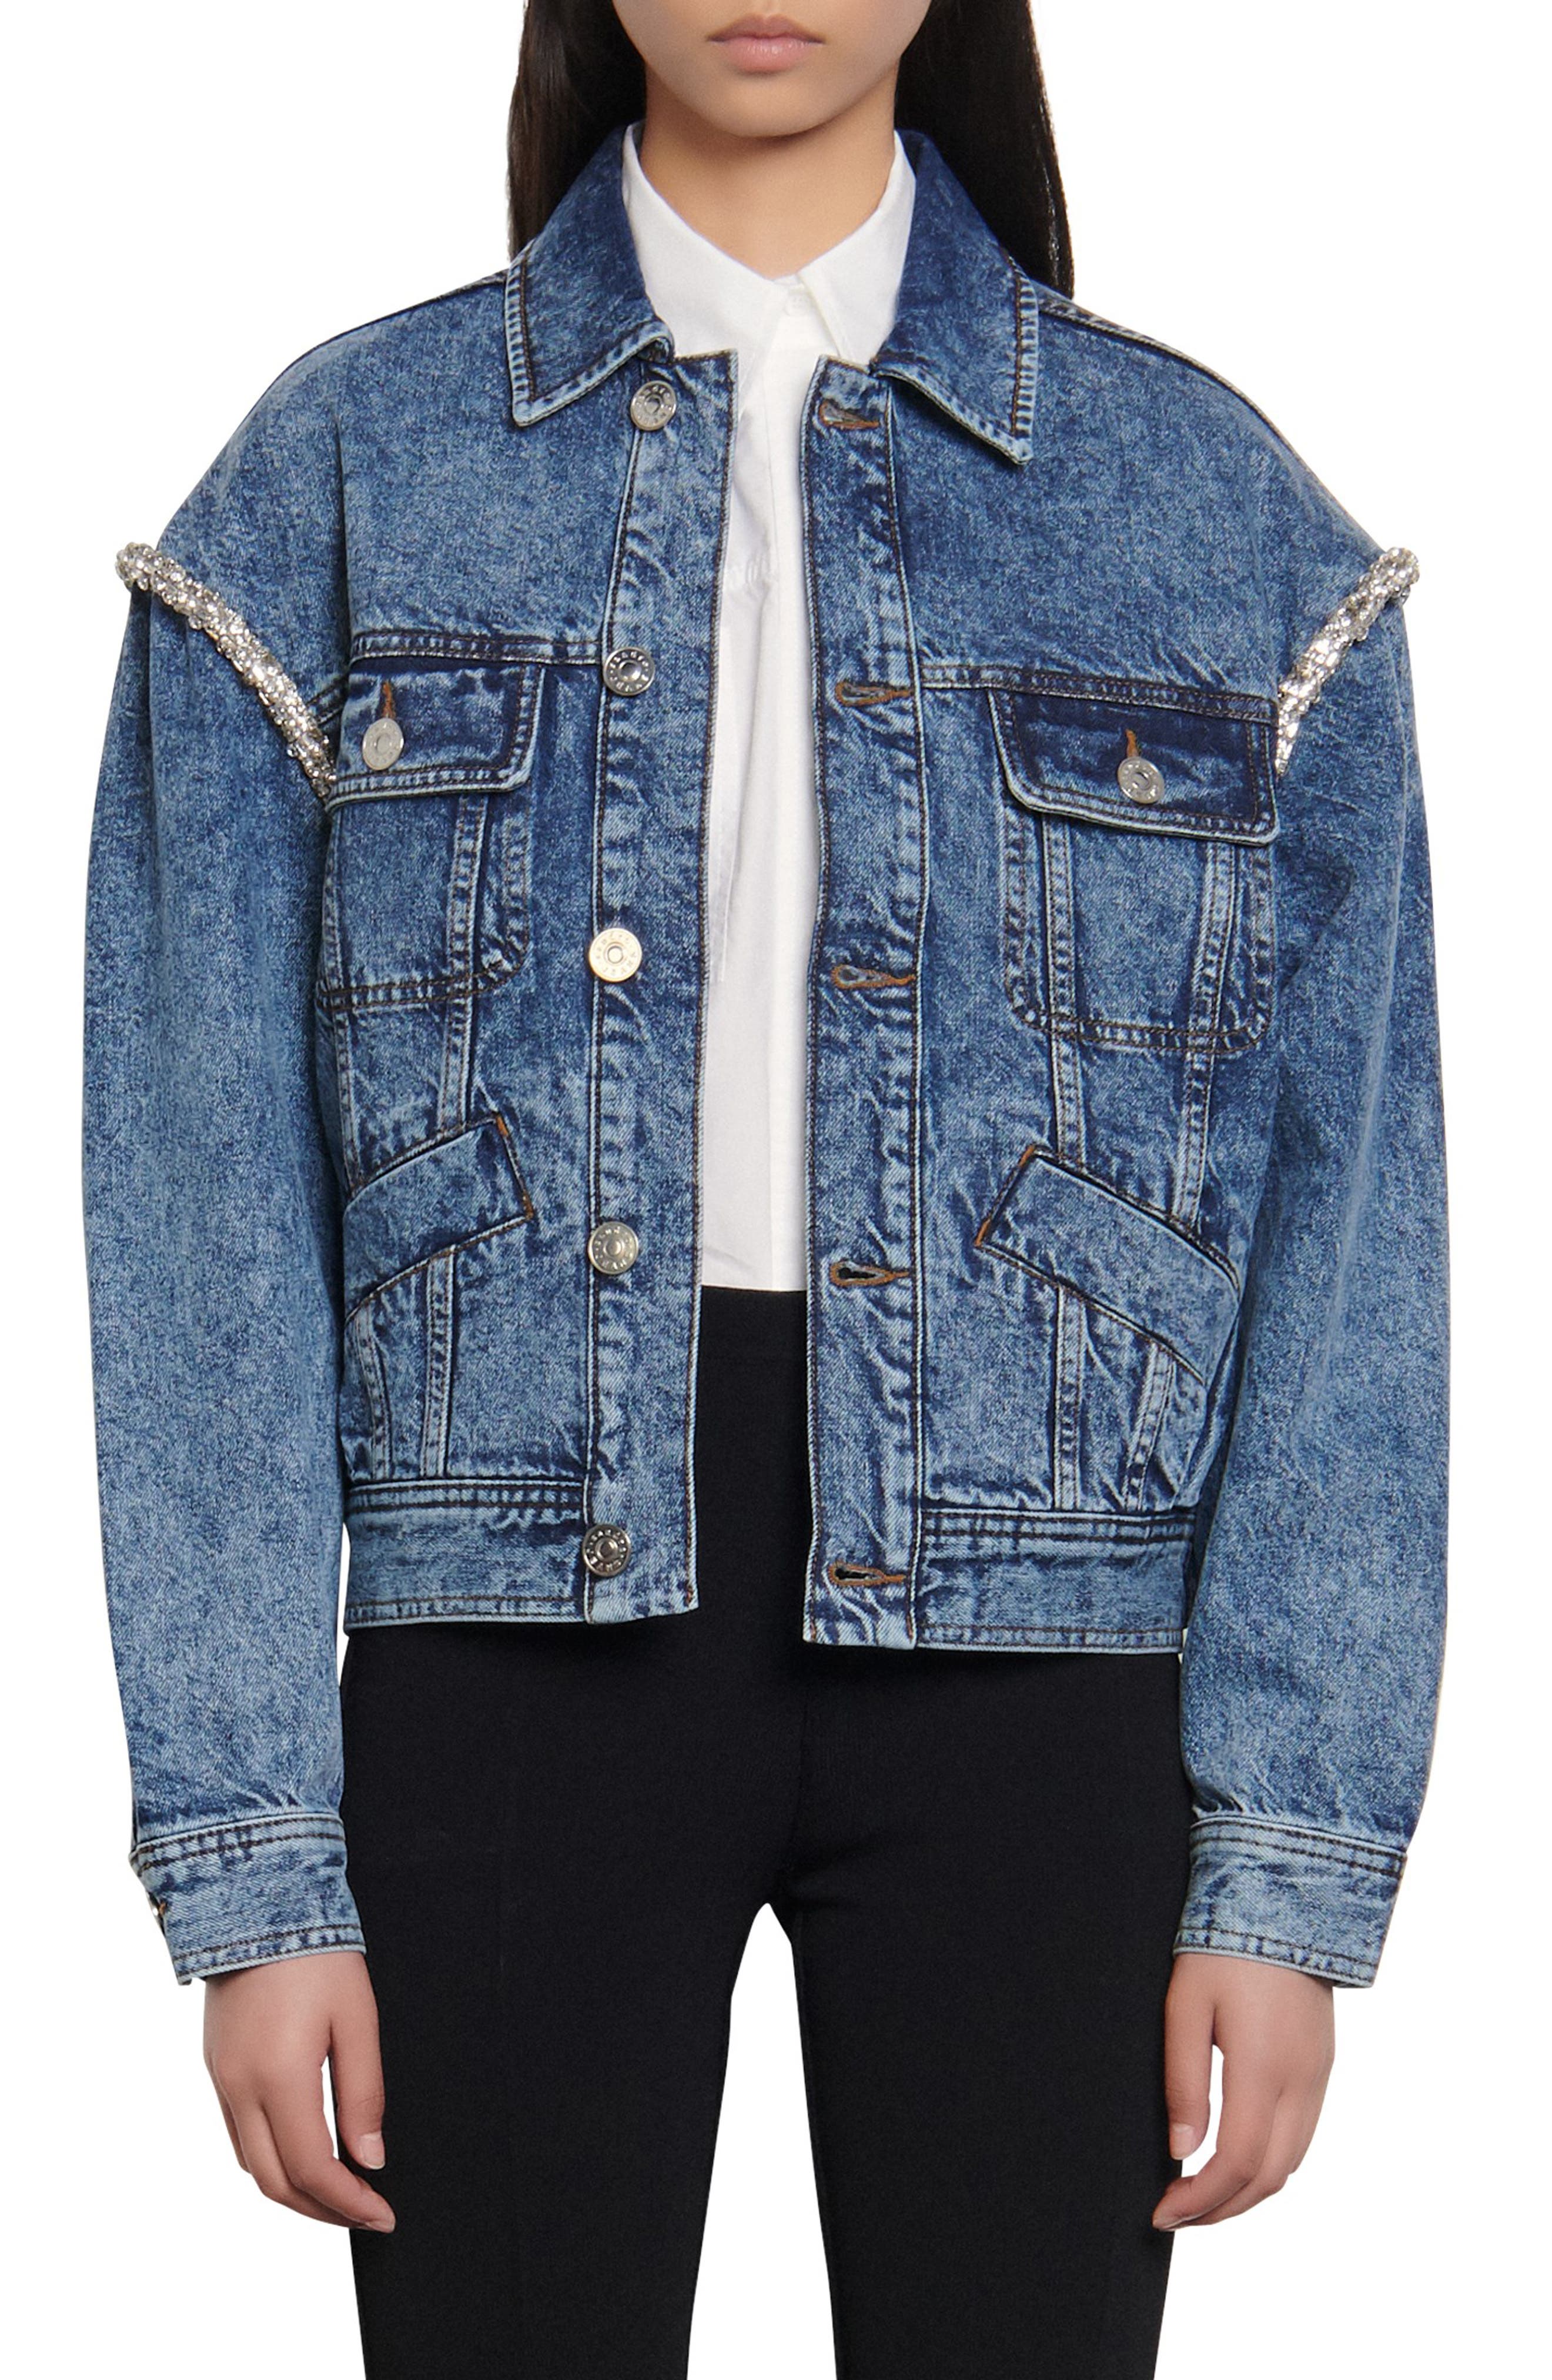 rhinestone embellished jean jacket